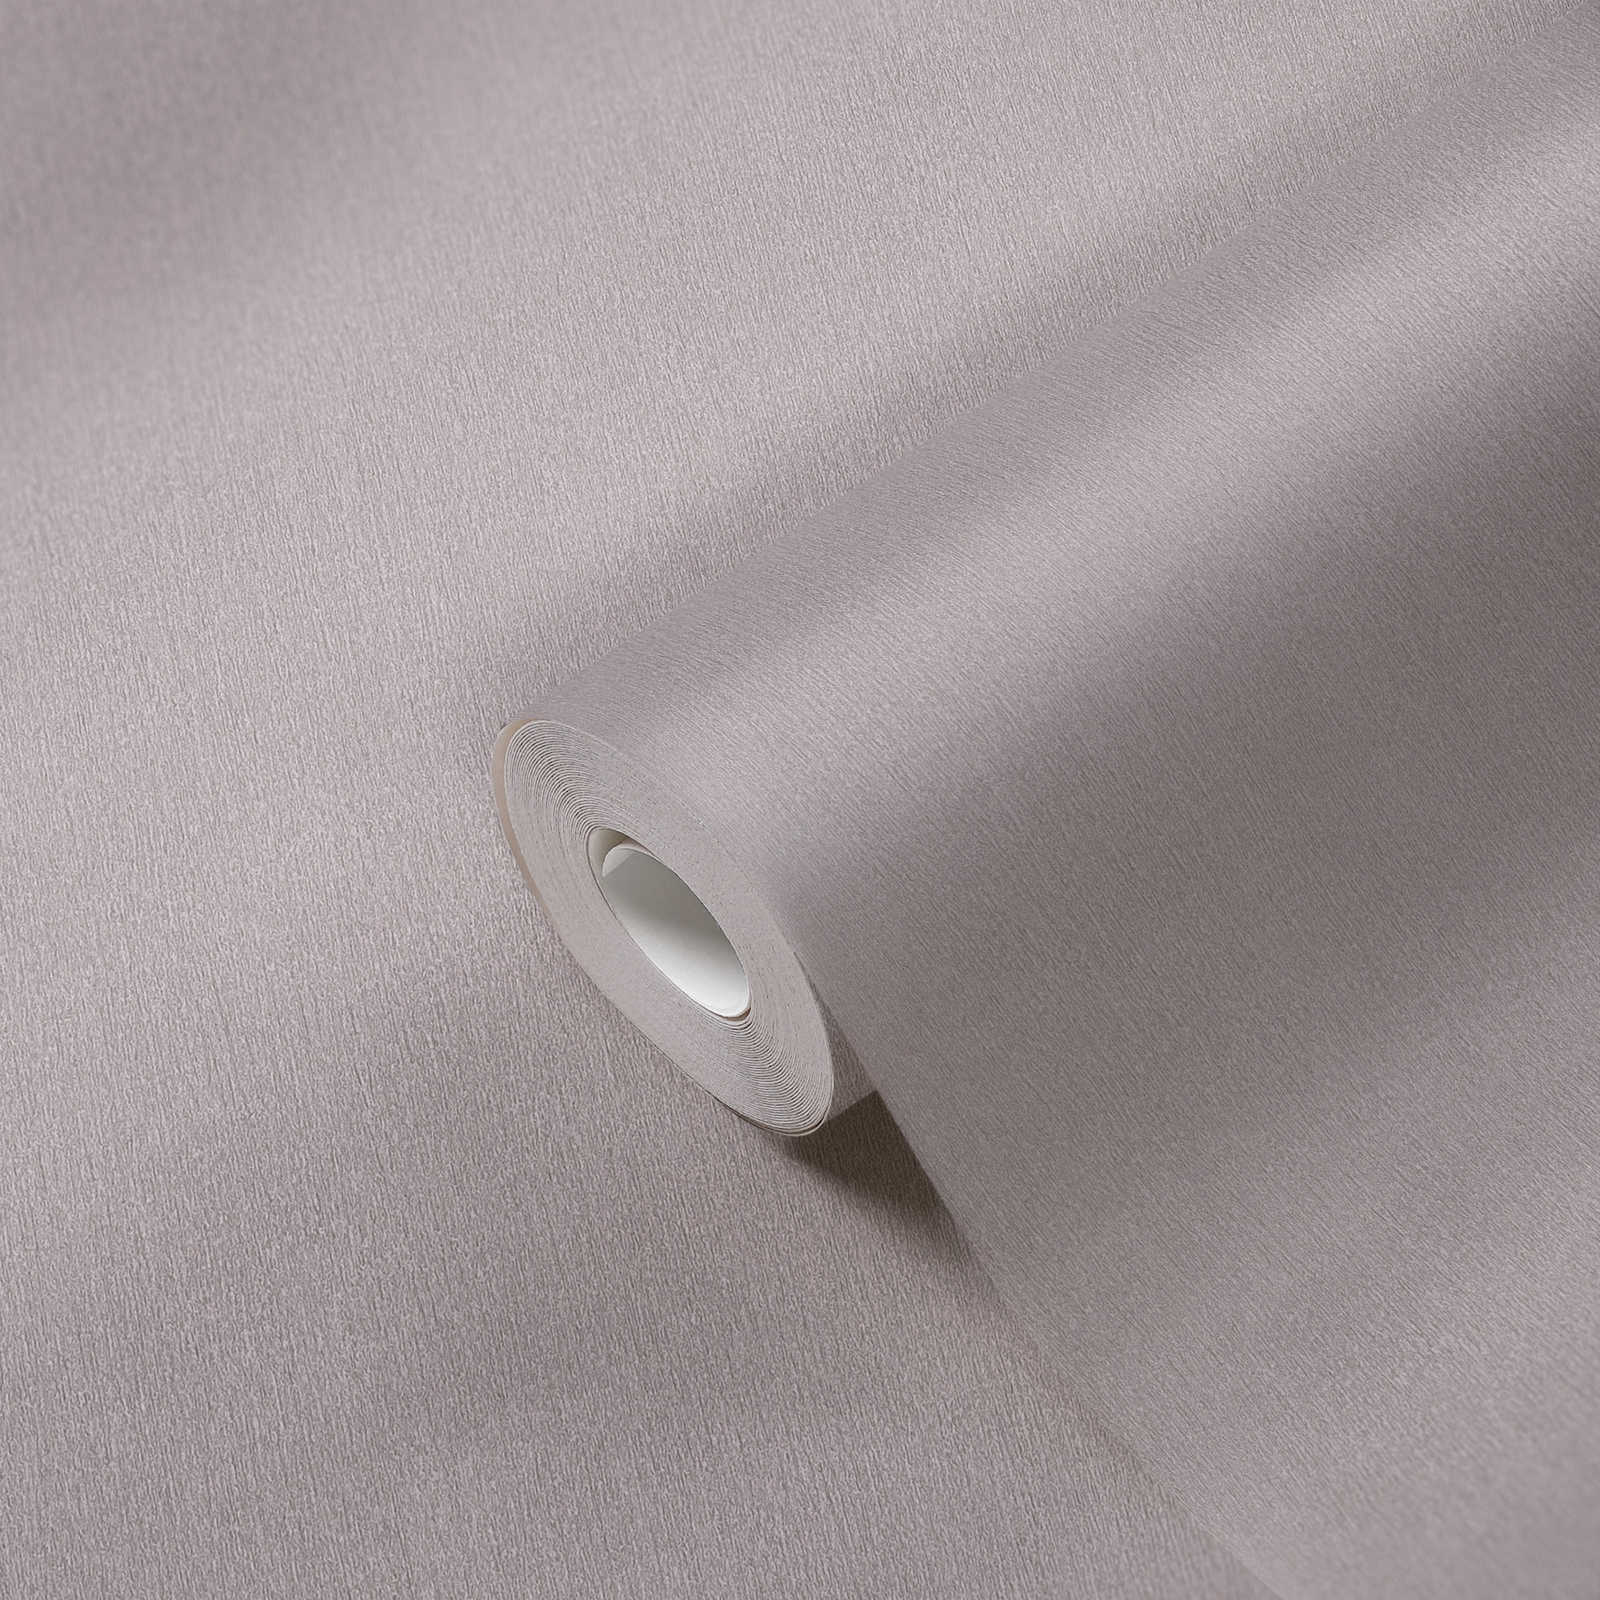             Papel pintado unitario gris con sombreado de color, no tejido liso
        